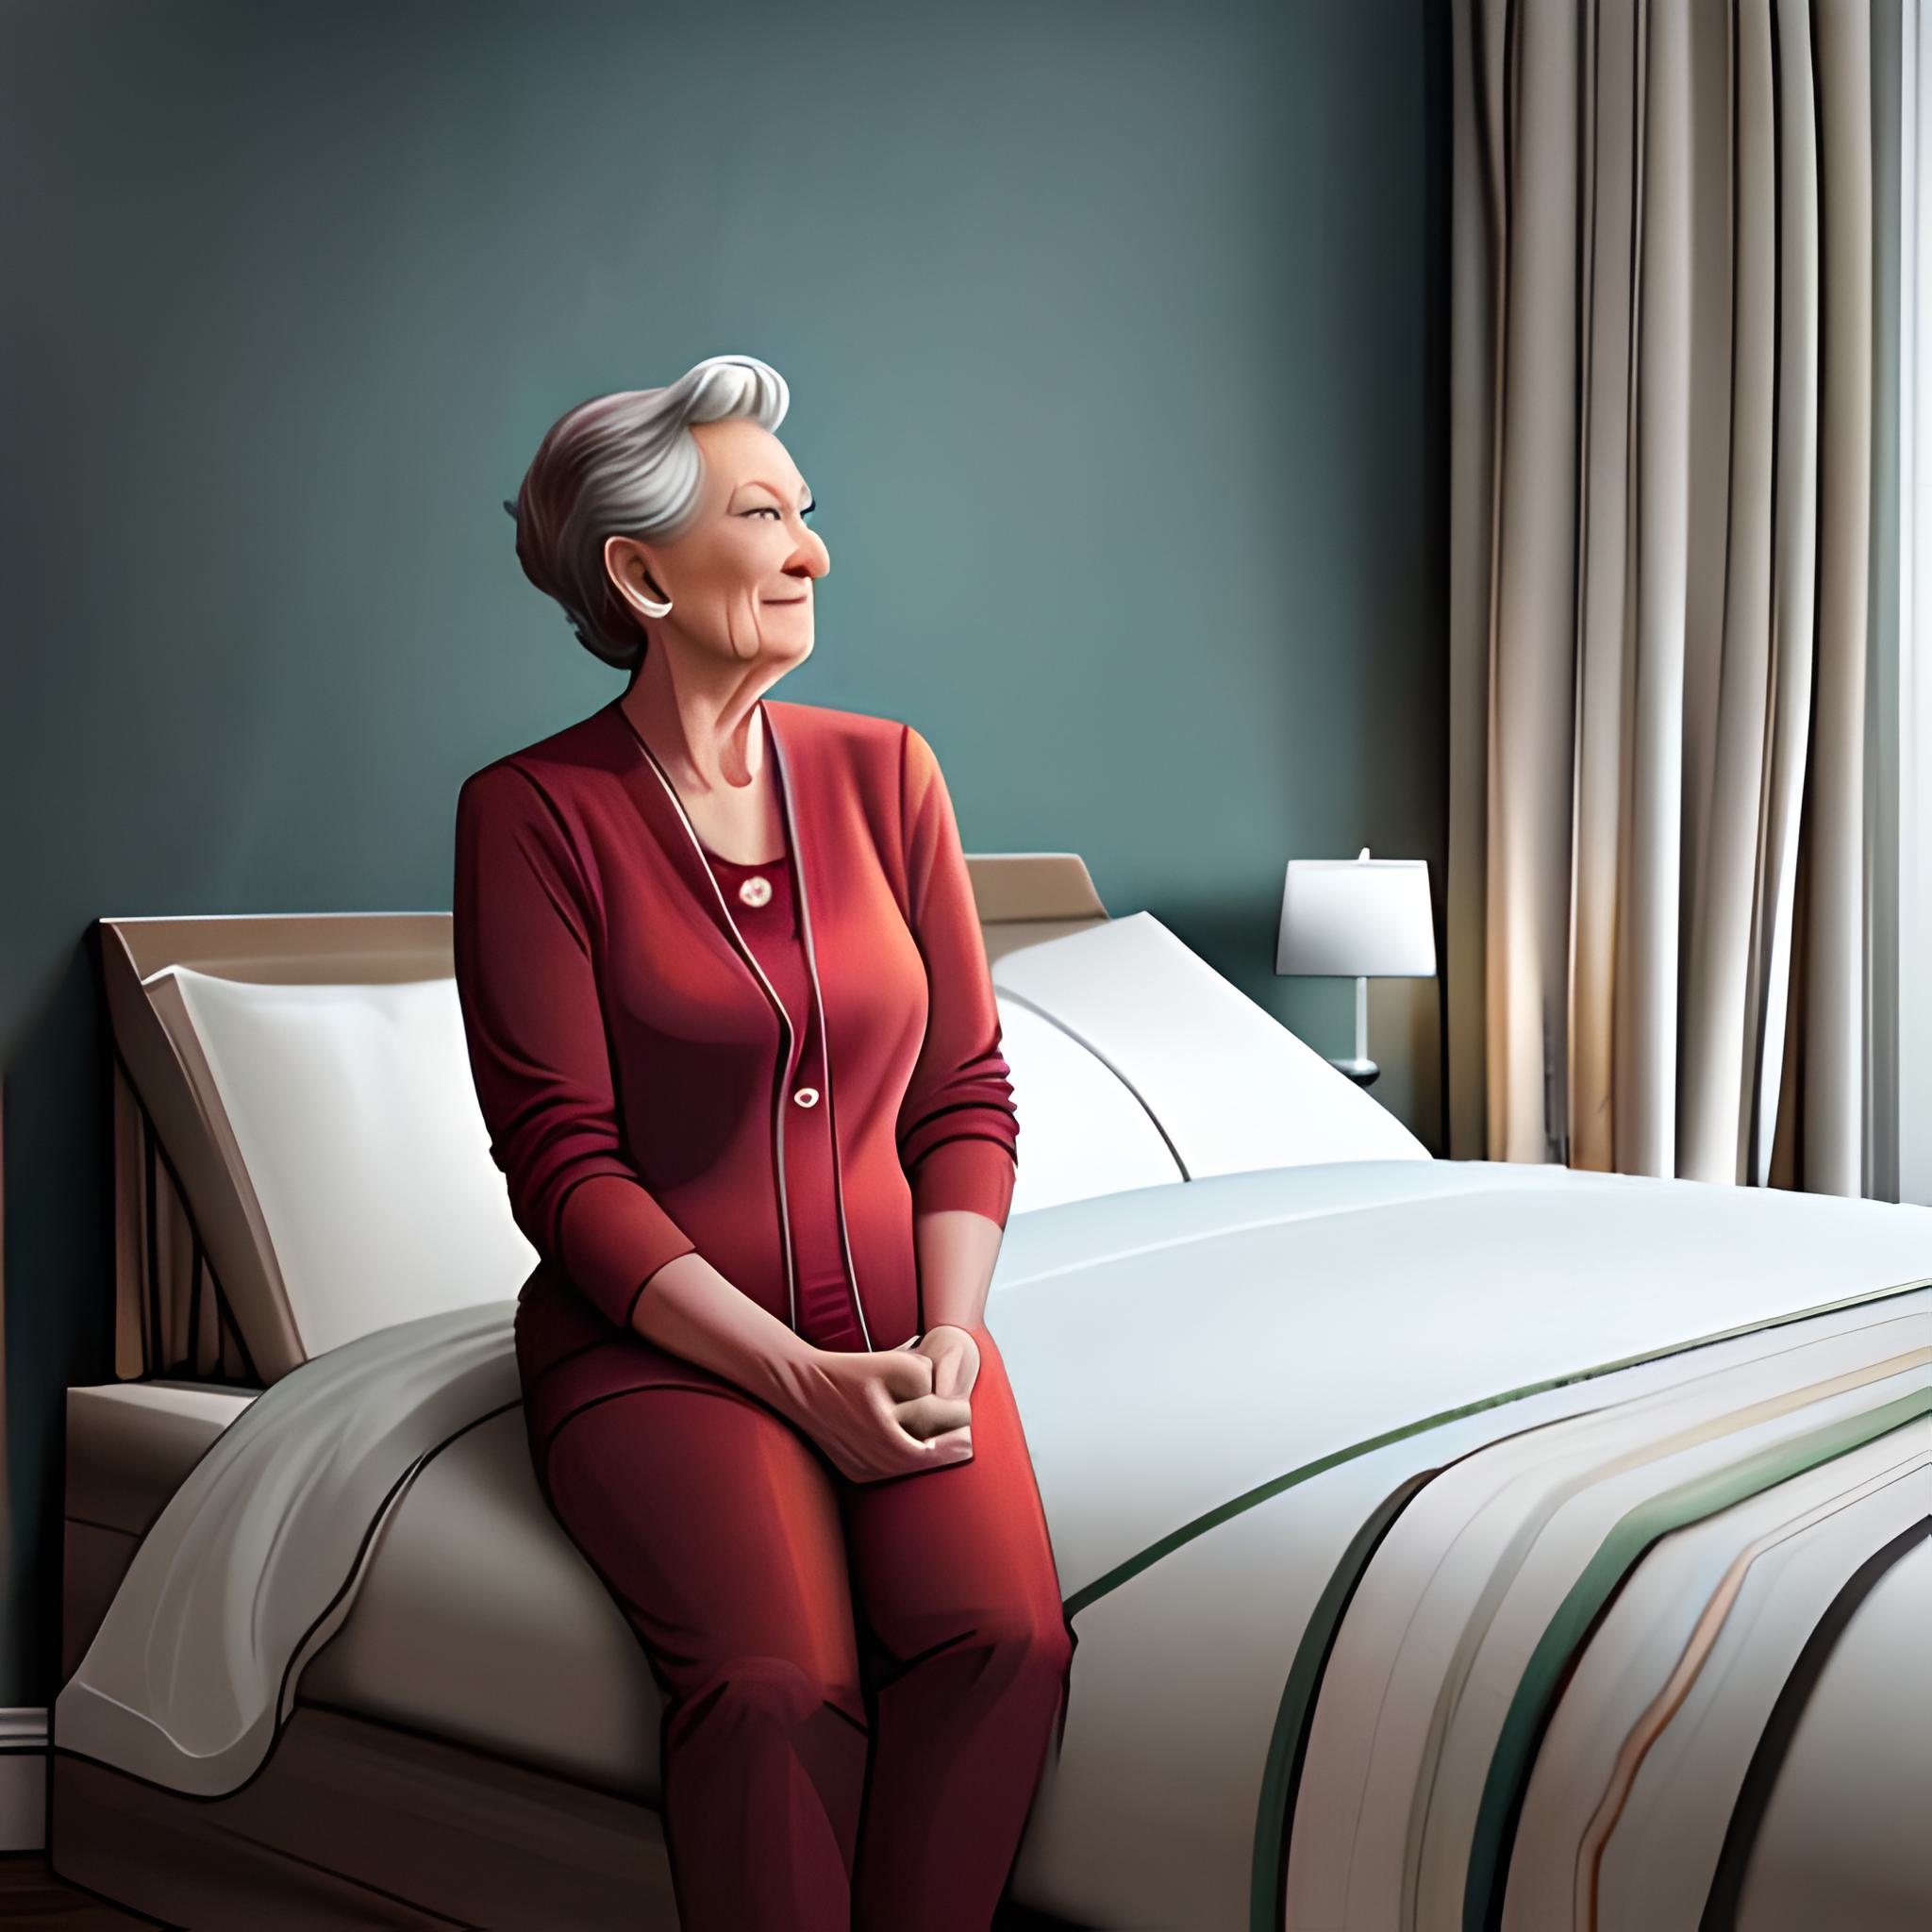 Mujer mayor sentada encima de una cama sonriendo con un vestido rojo